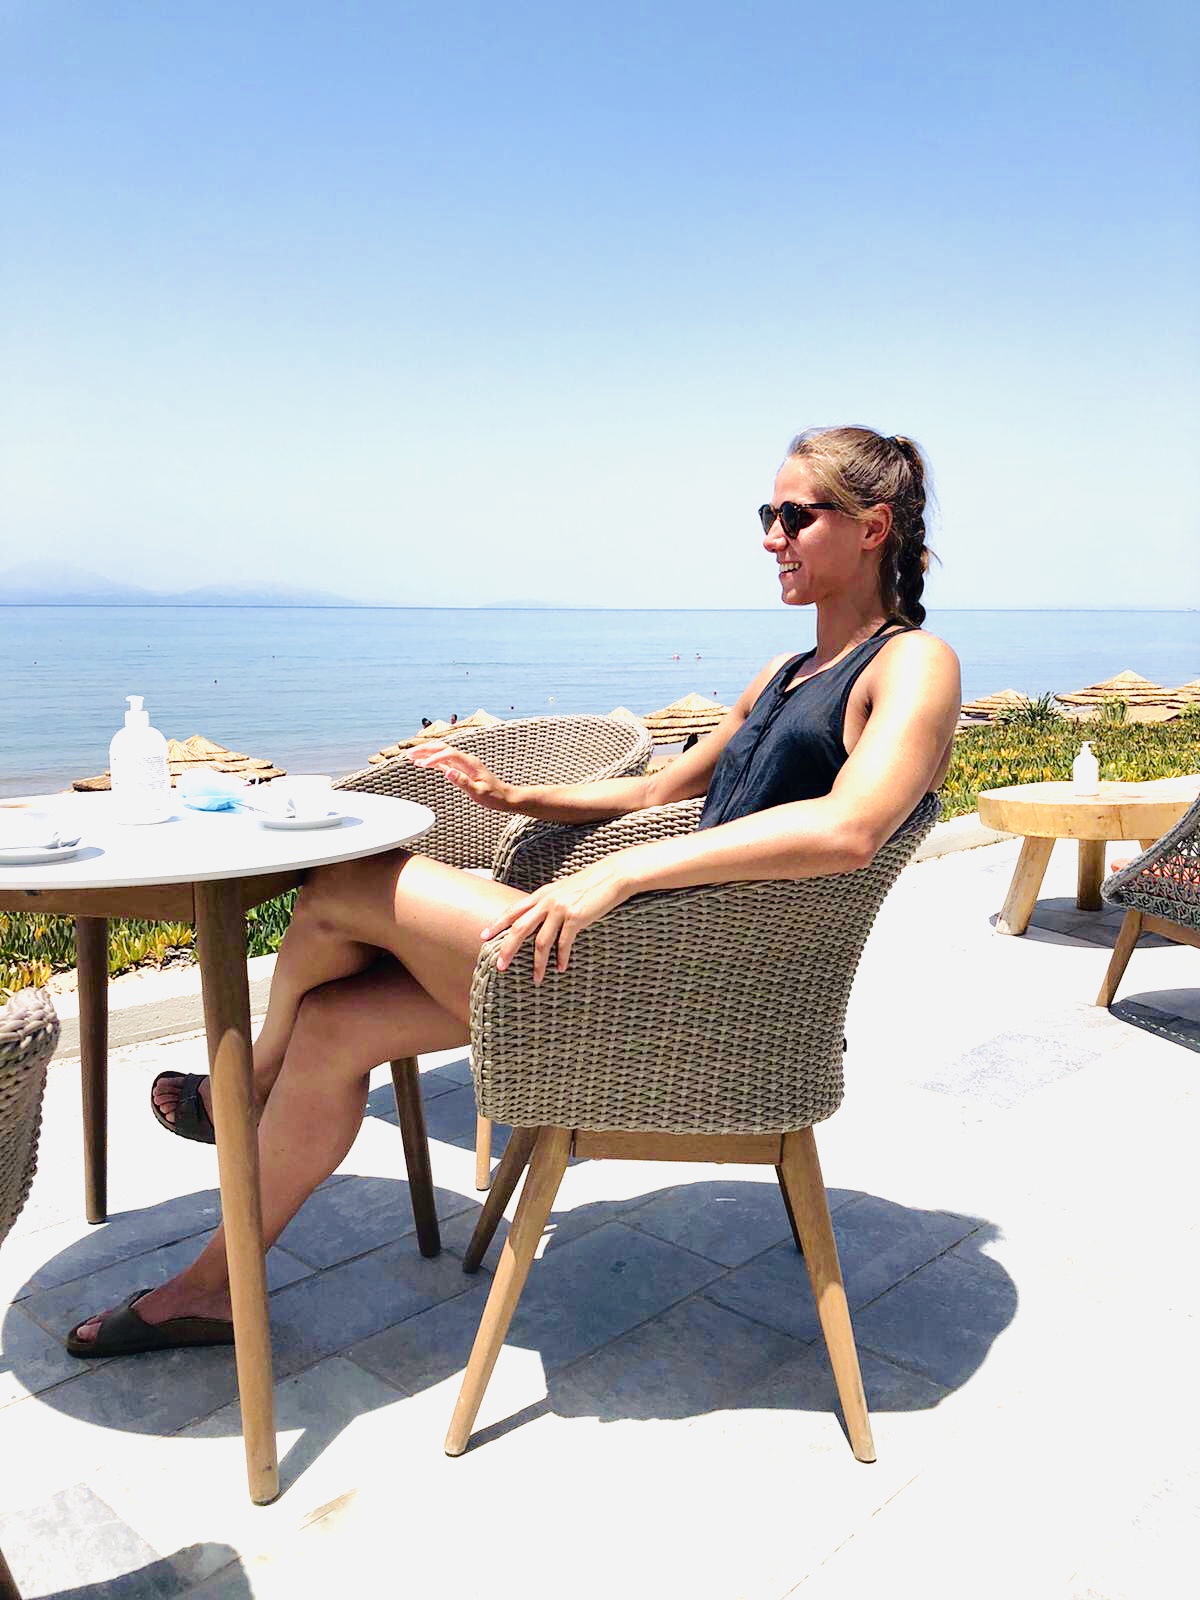 Urlaub beschränkt sich bei Xenia Smits auf zwei Wochen im Juni - aber Genießen kann sie auch ganz gut!